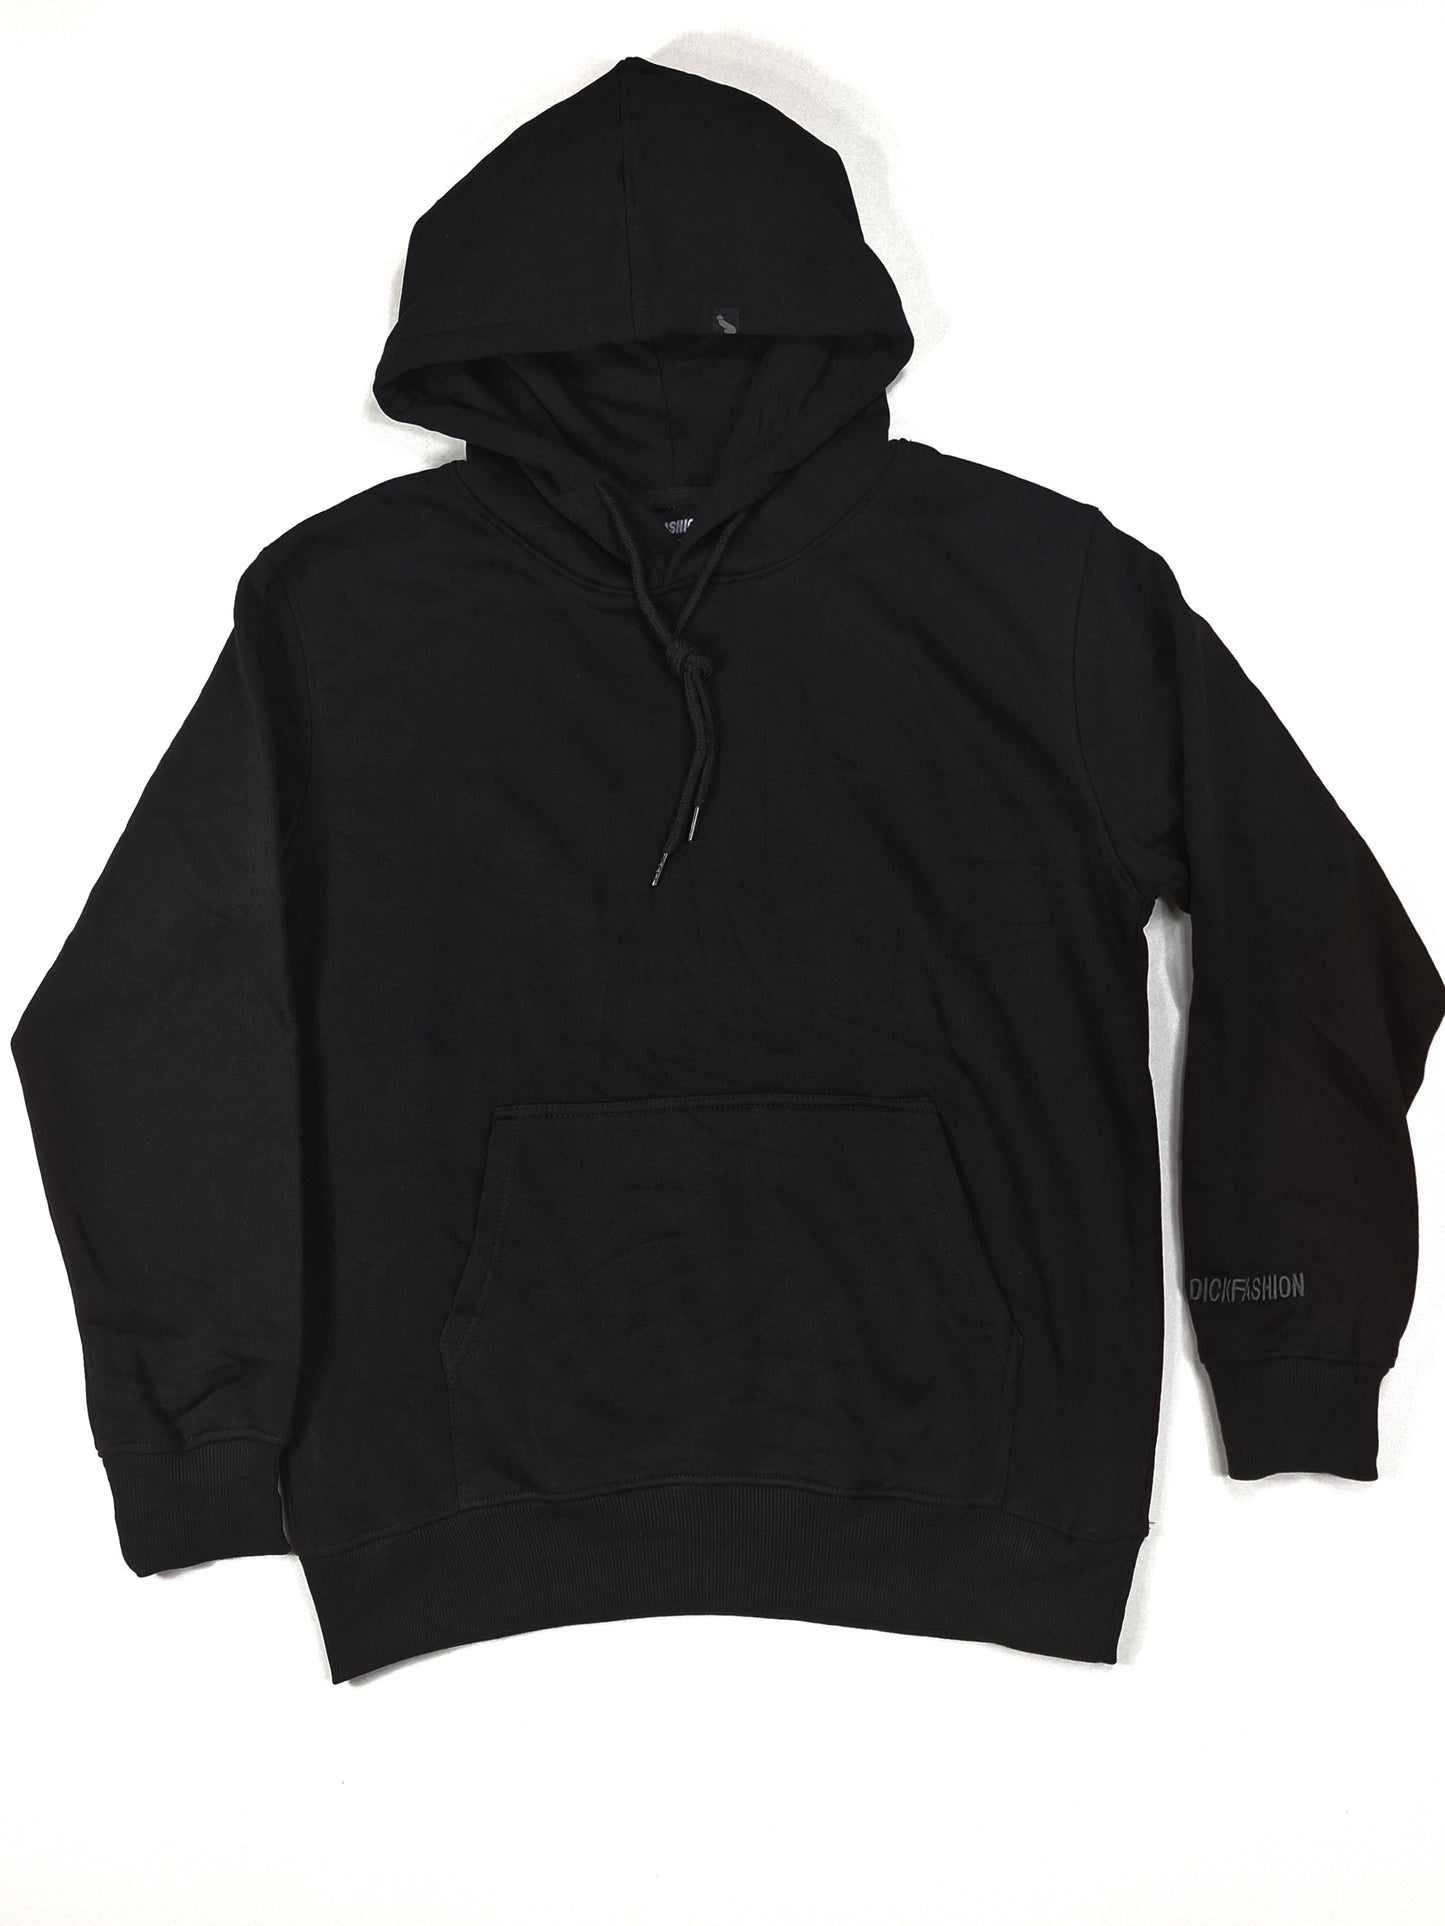 Svart hoodie eller huvtröja i hög kvalité till ett lågt pris